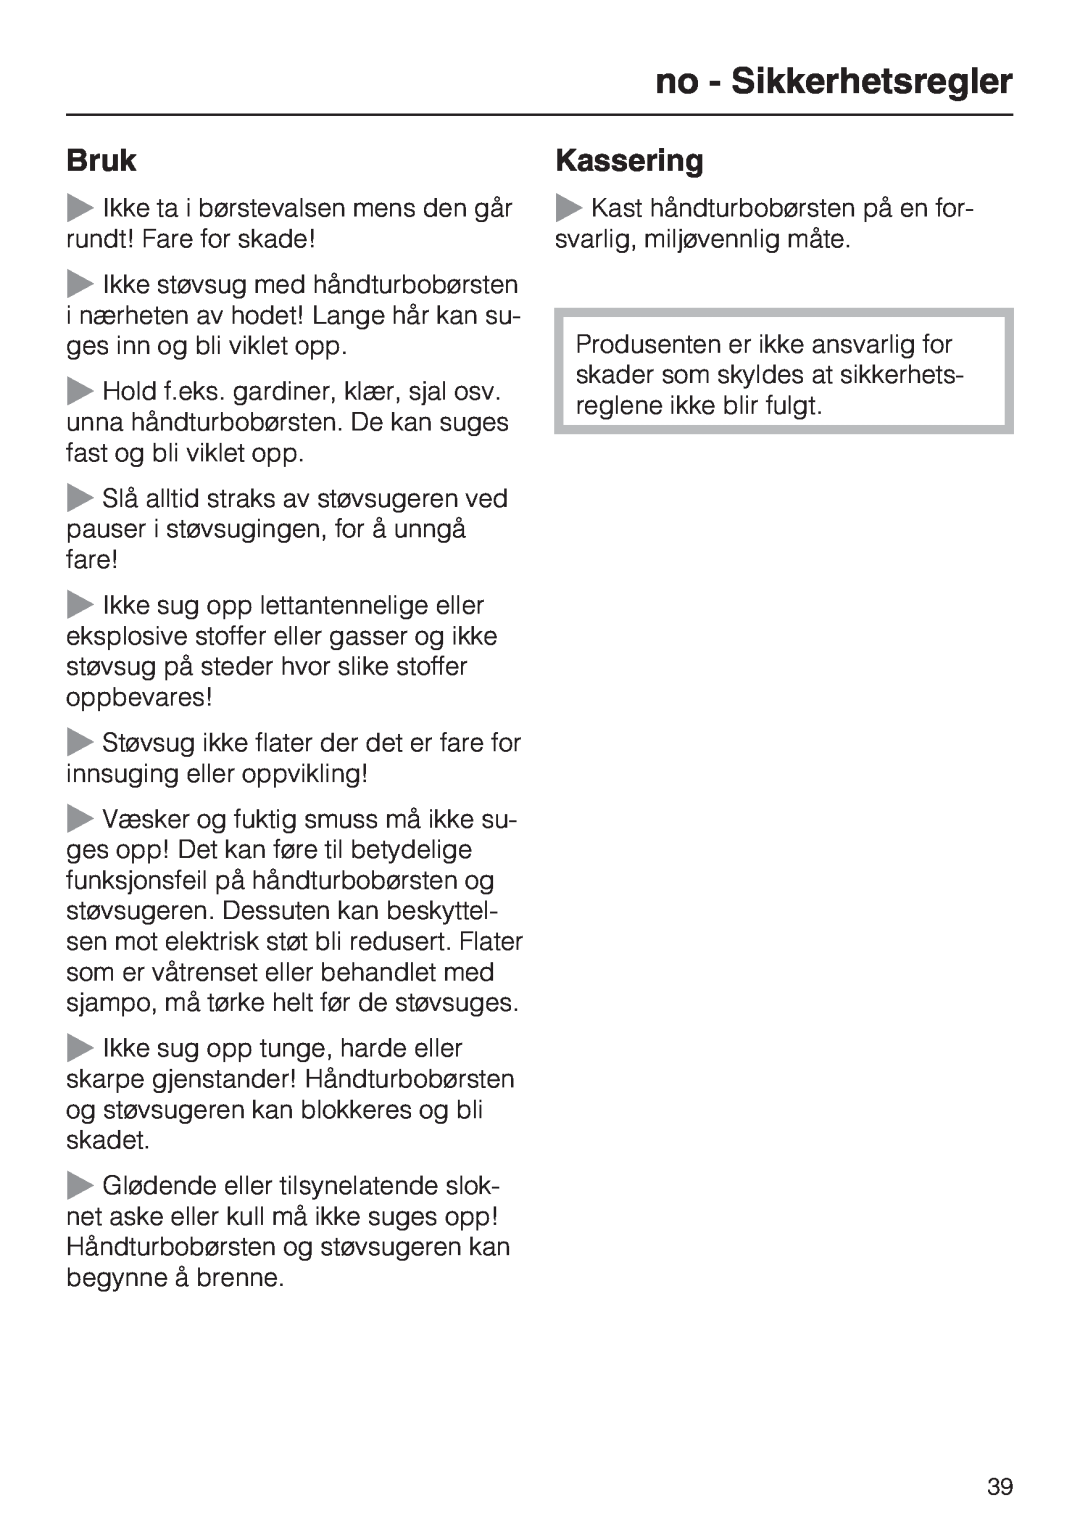 Miele STB 101 manual no - Sikkerhetsregler, Bruk, Kassering 